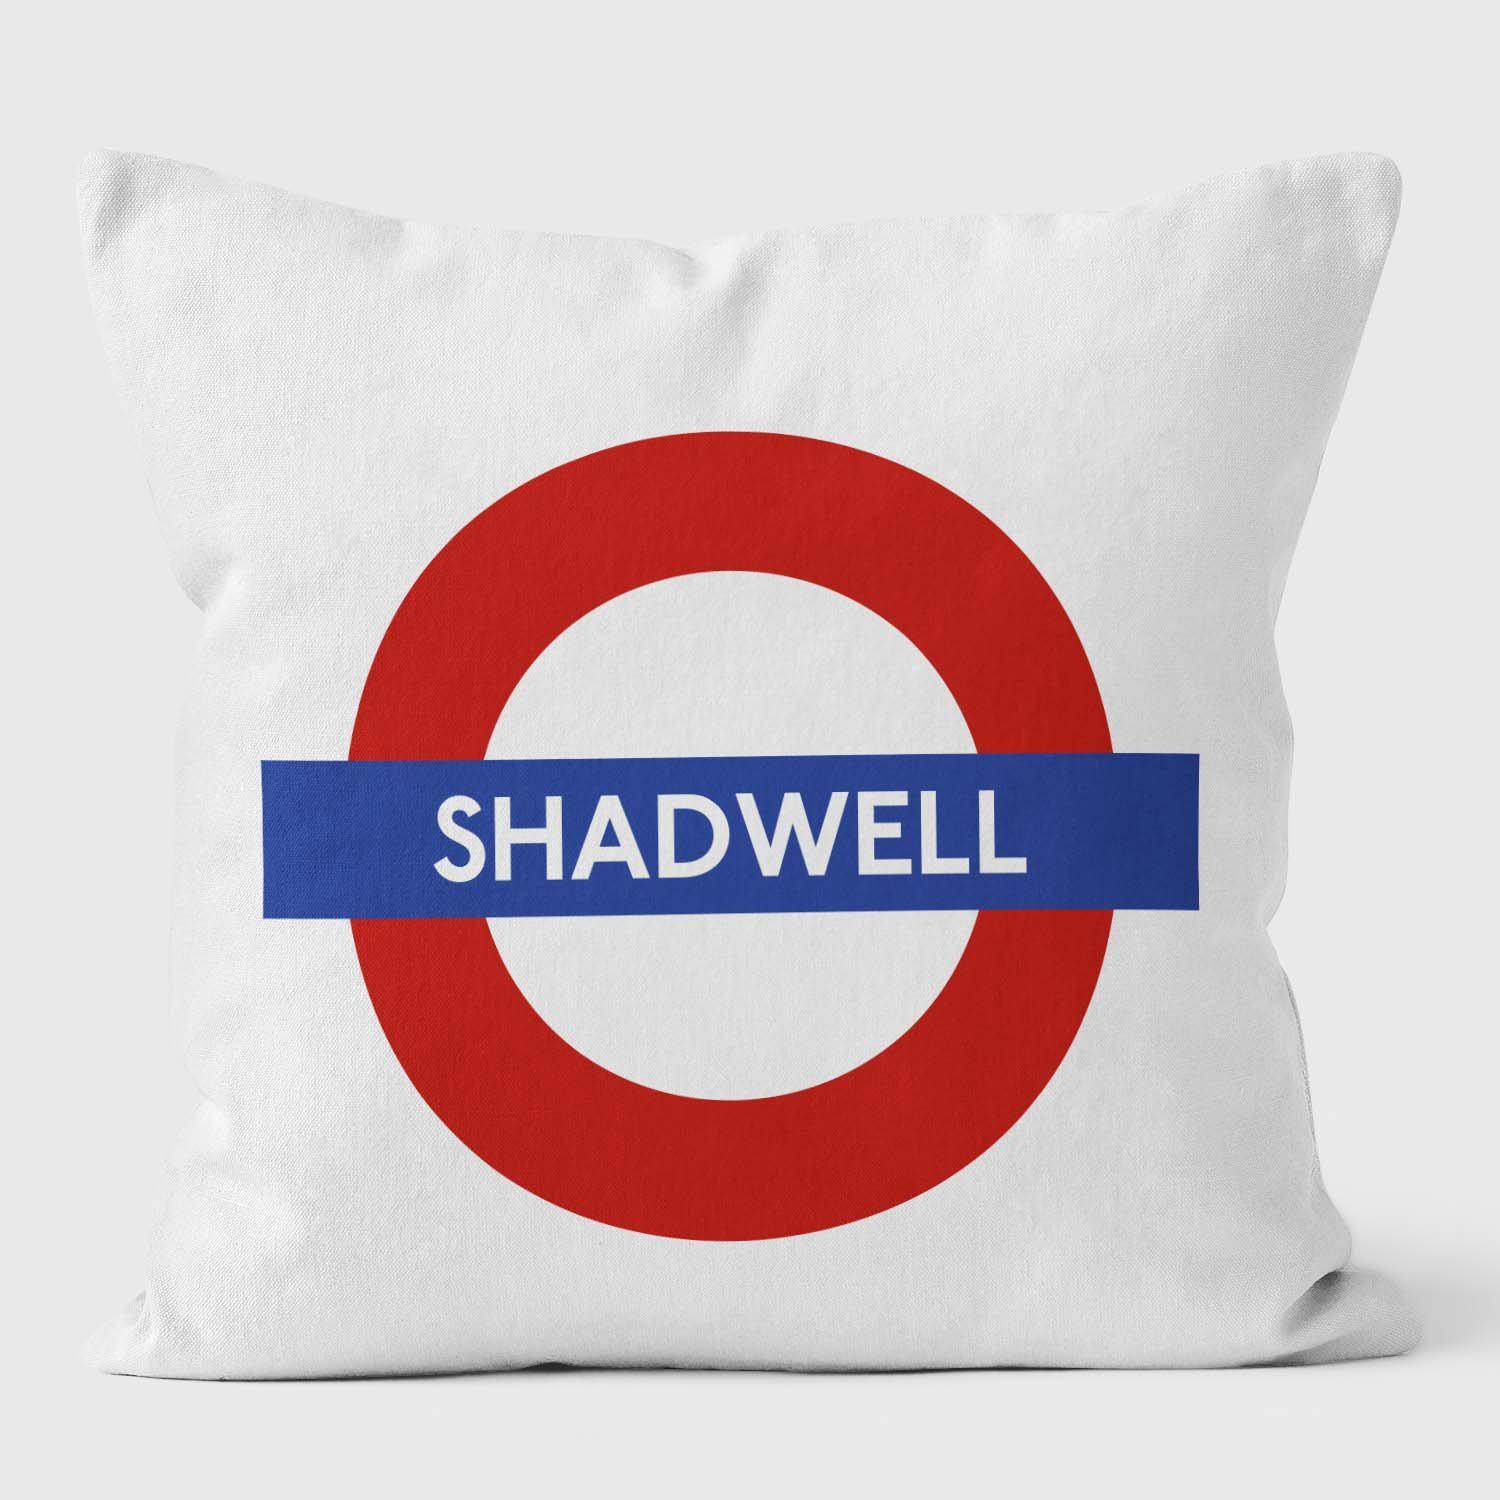 Shadwell London Underground Tube Station Roundel Cushion - Handmade Cushions UK - WeLoveCushions